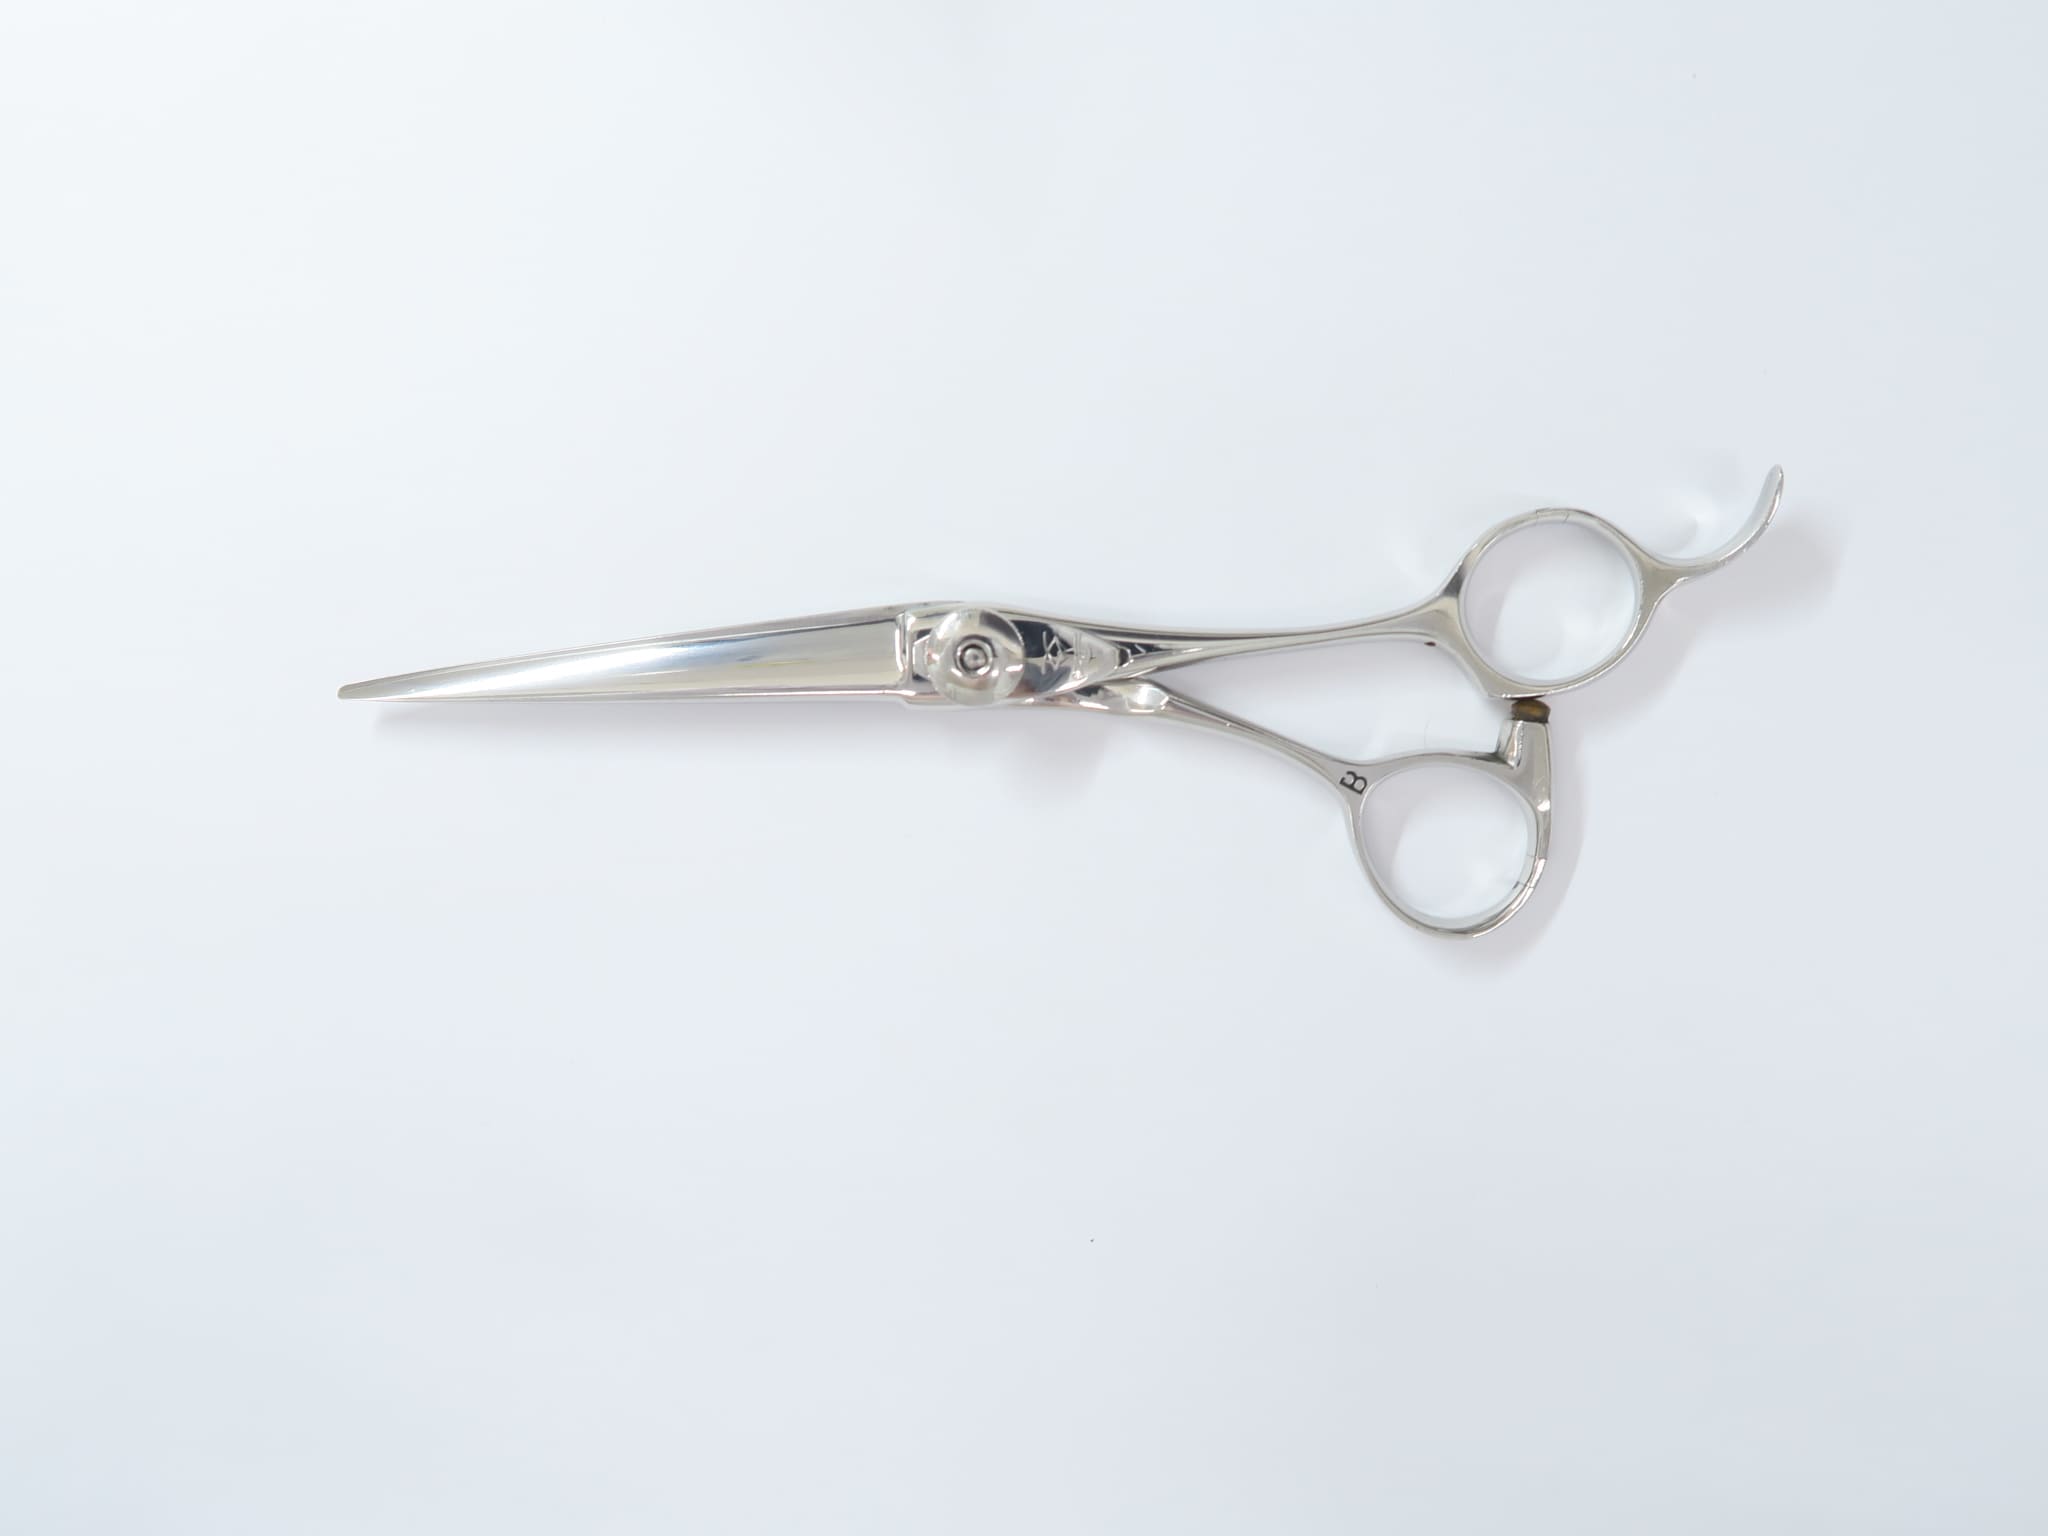 Cランク【ナルトシザー naruto scissors】 シザー 美容師・理容師 6.2インチ 右利き 【中古】:H-4812